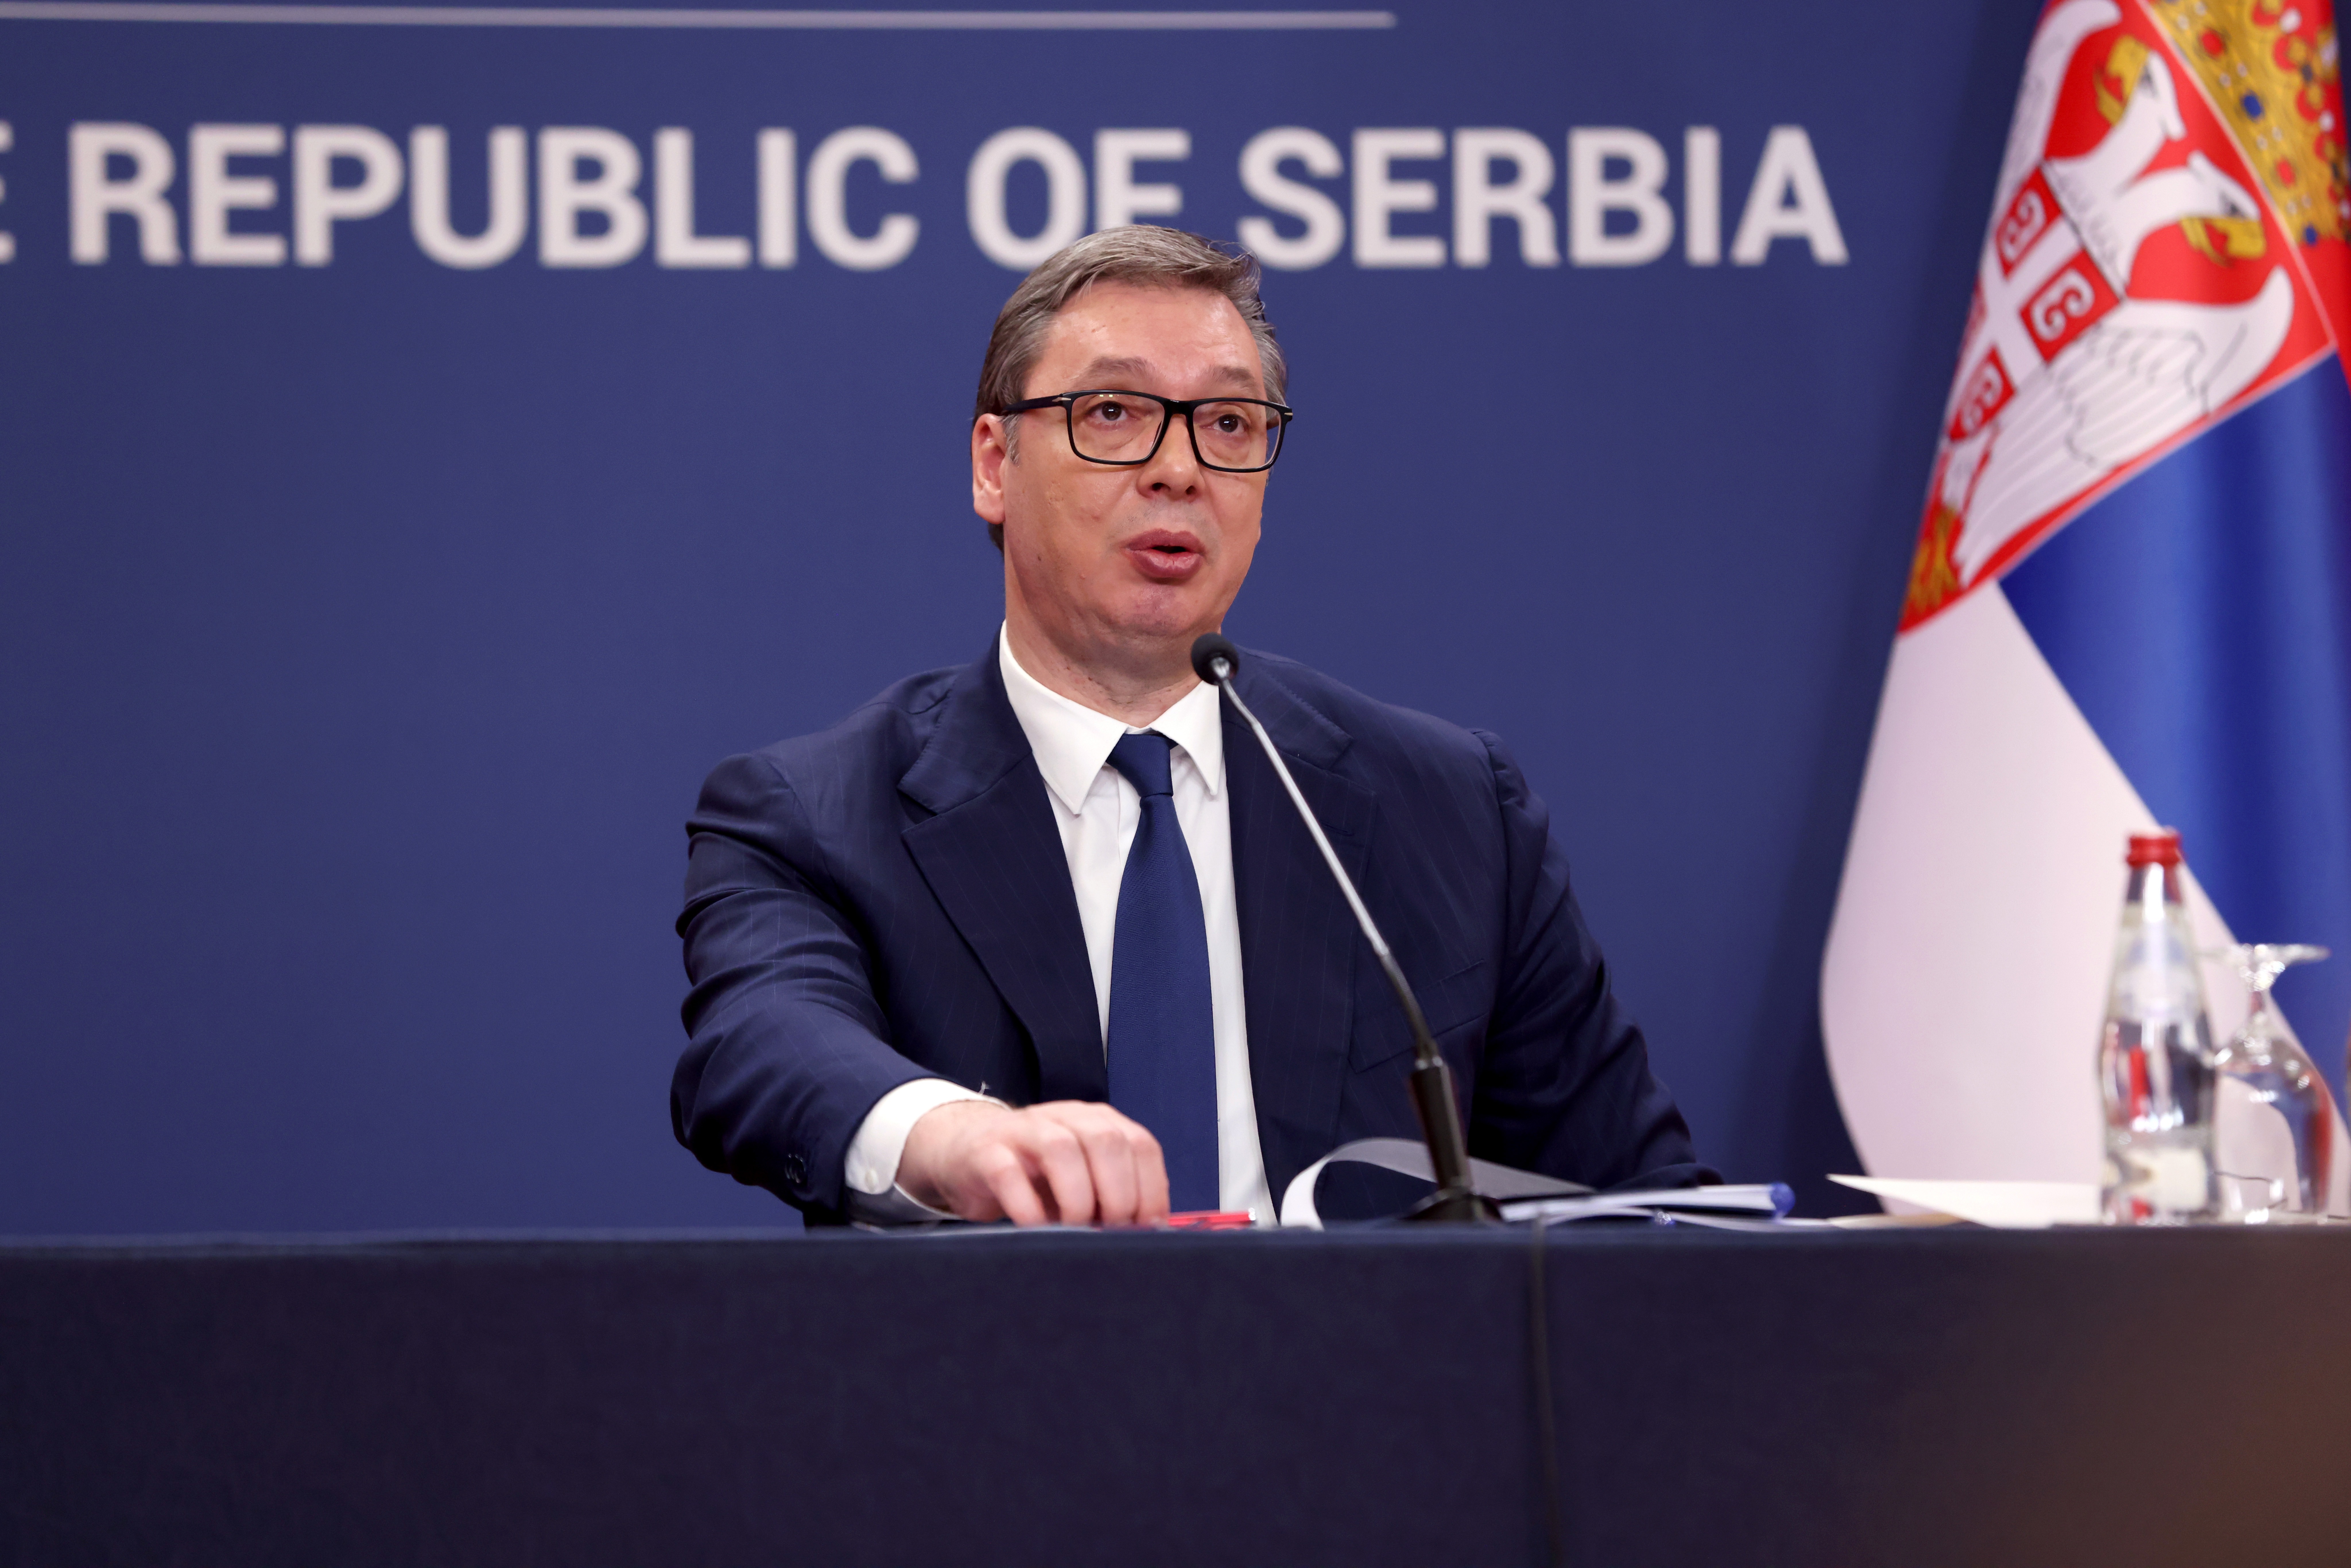  „STOJIMO SNAŽNI I PONOSNI“ Vučić se zahvalio ujedinjenom srpskom narodu